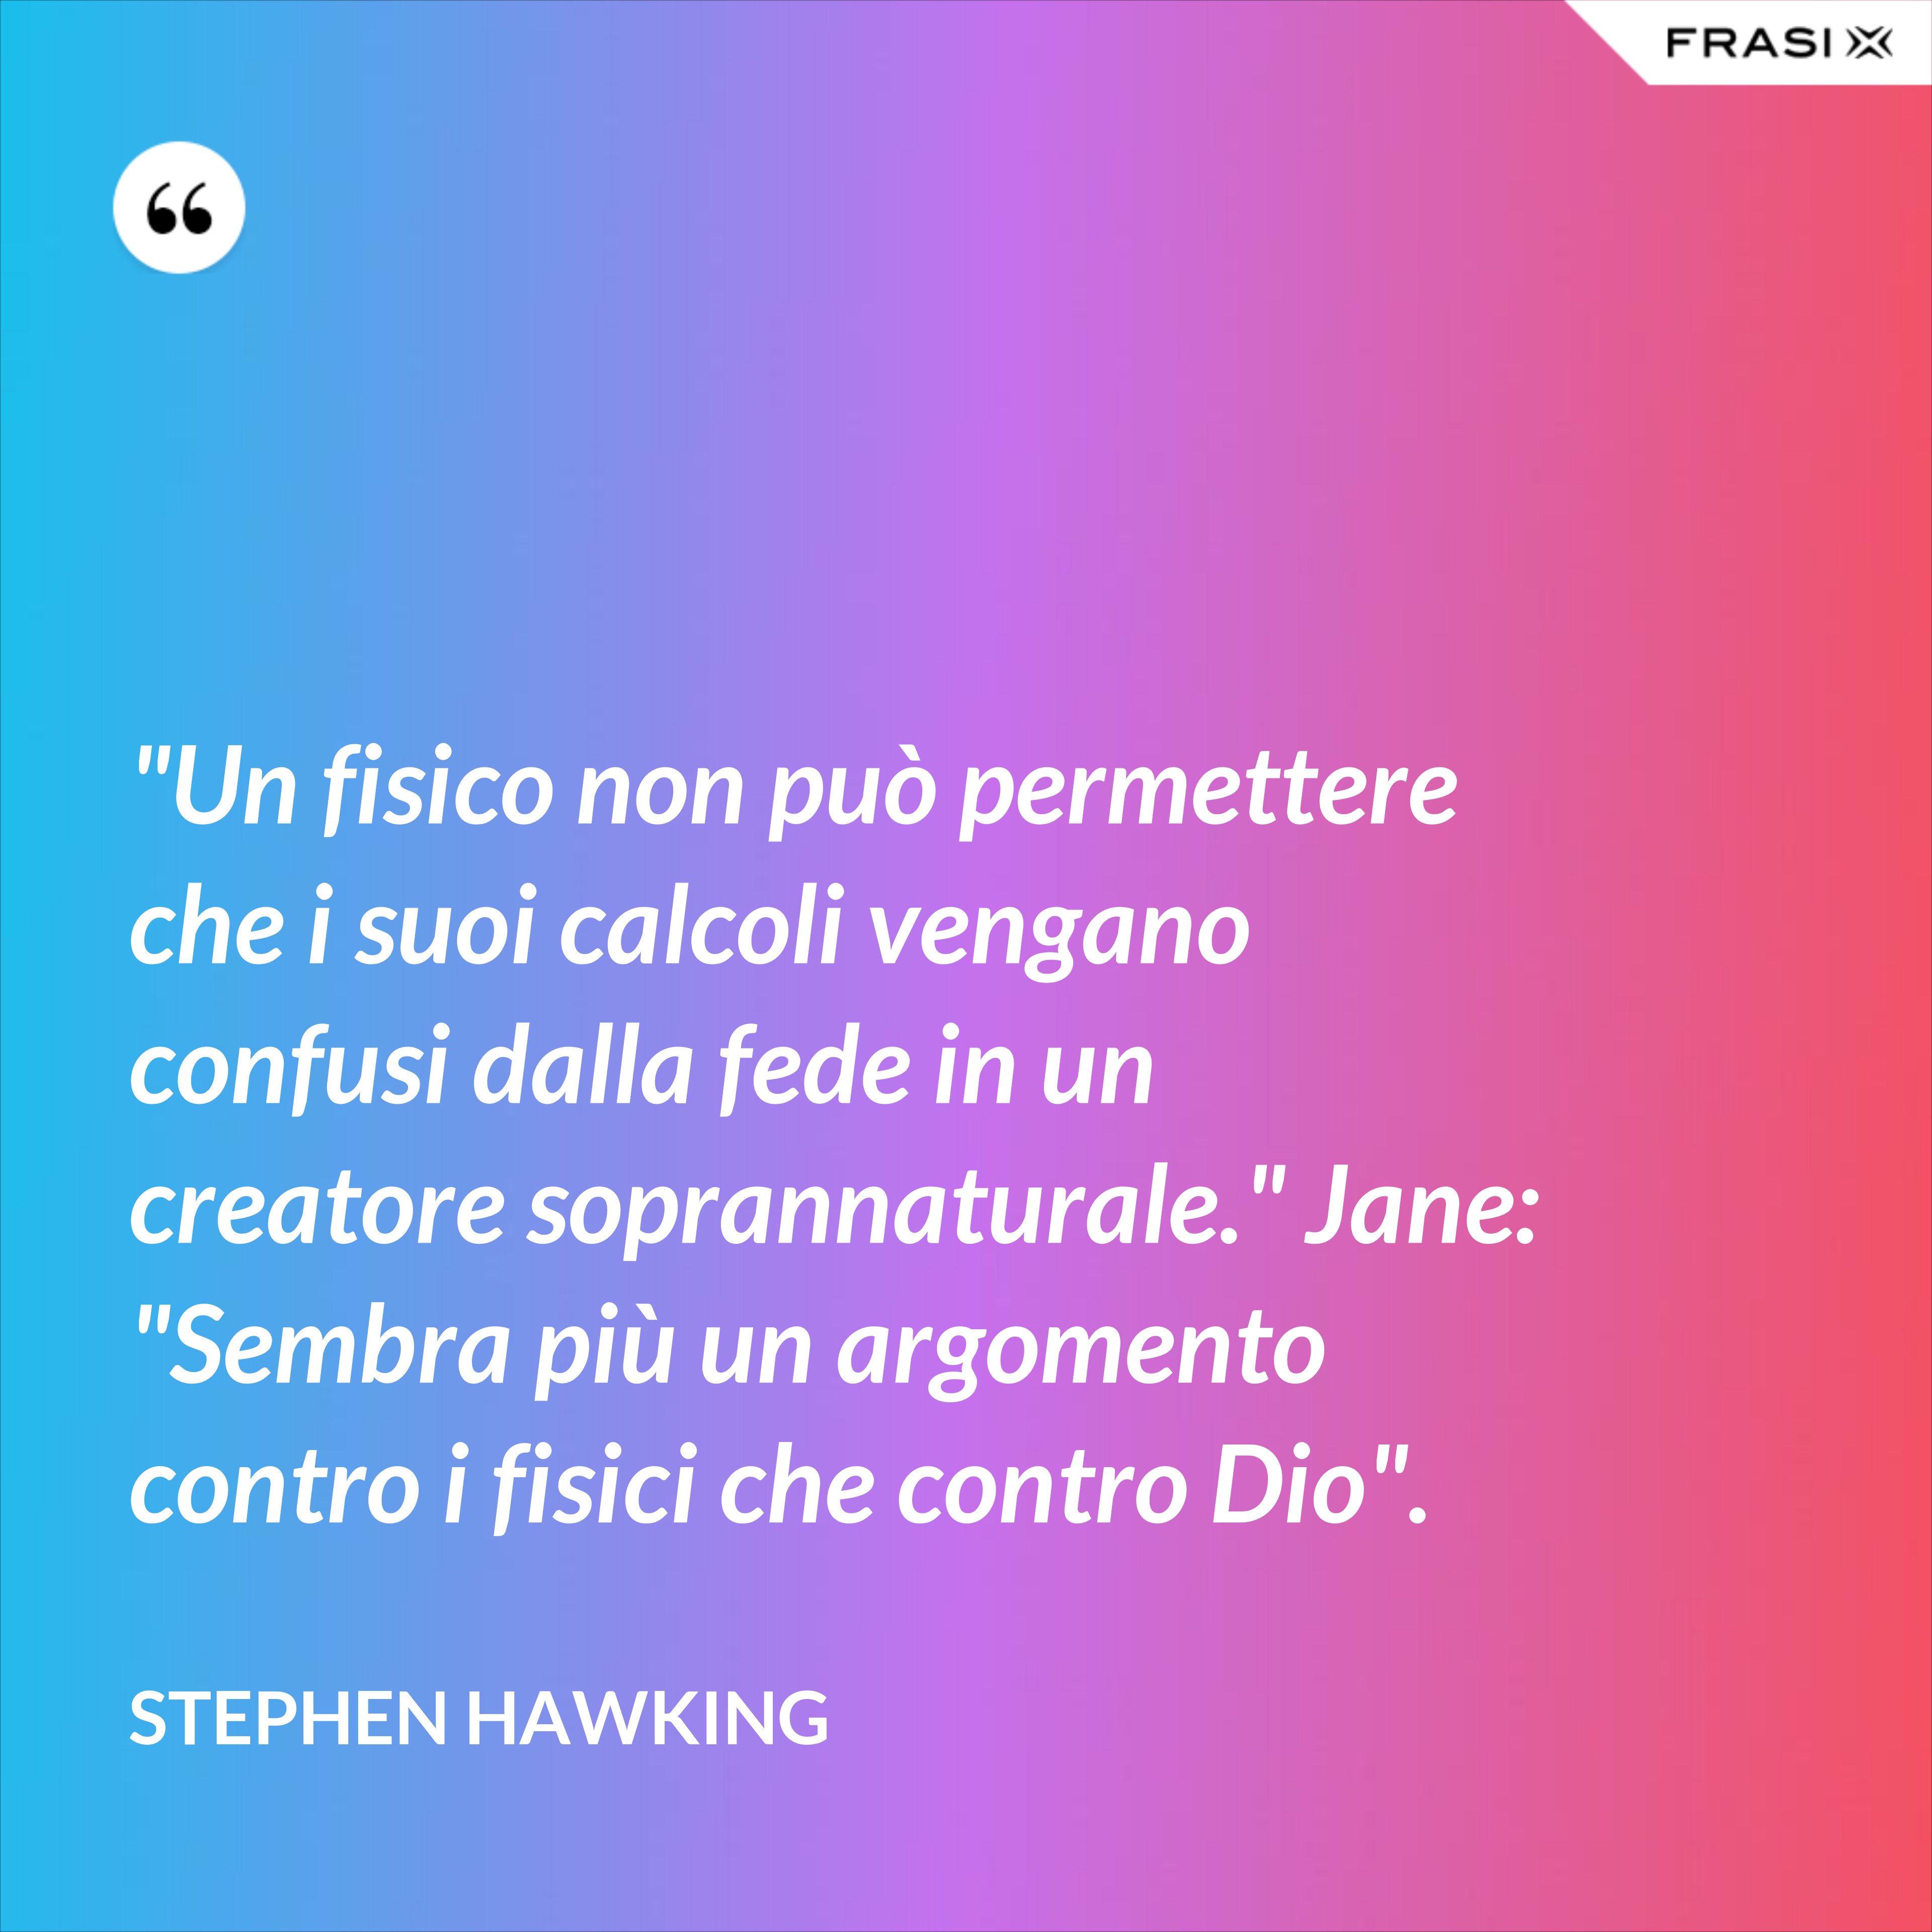 "Un fisico non può permettere che i suoi calcoli vengano confusi dalla fede in un creatore soprannaturale." Jane: "Sembra più un argomento contro i fisici che contro Dio". - Stephen Hawking